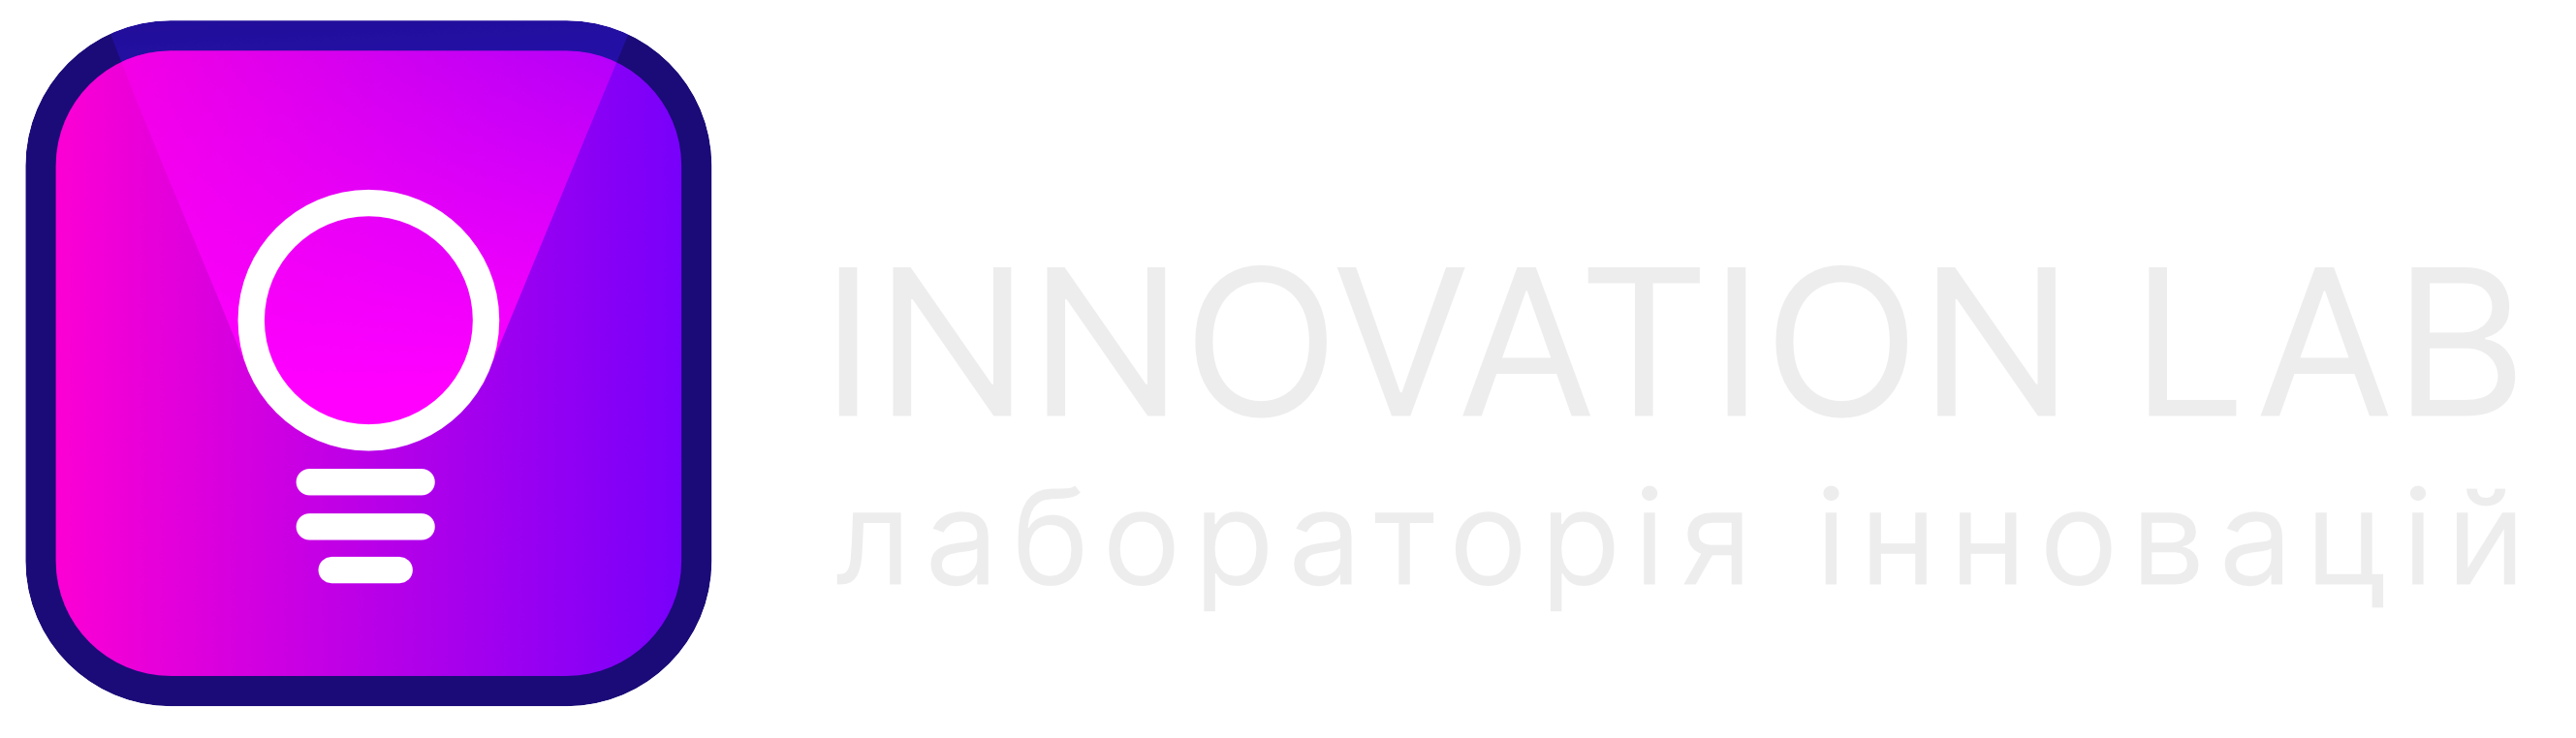 Innovationlab